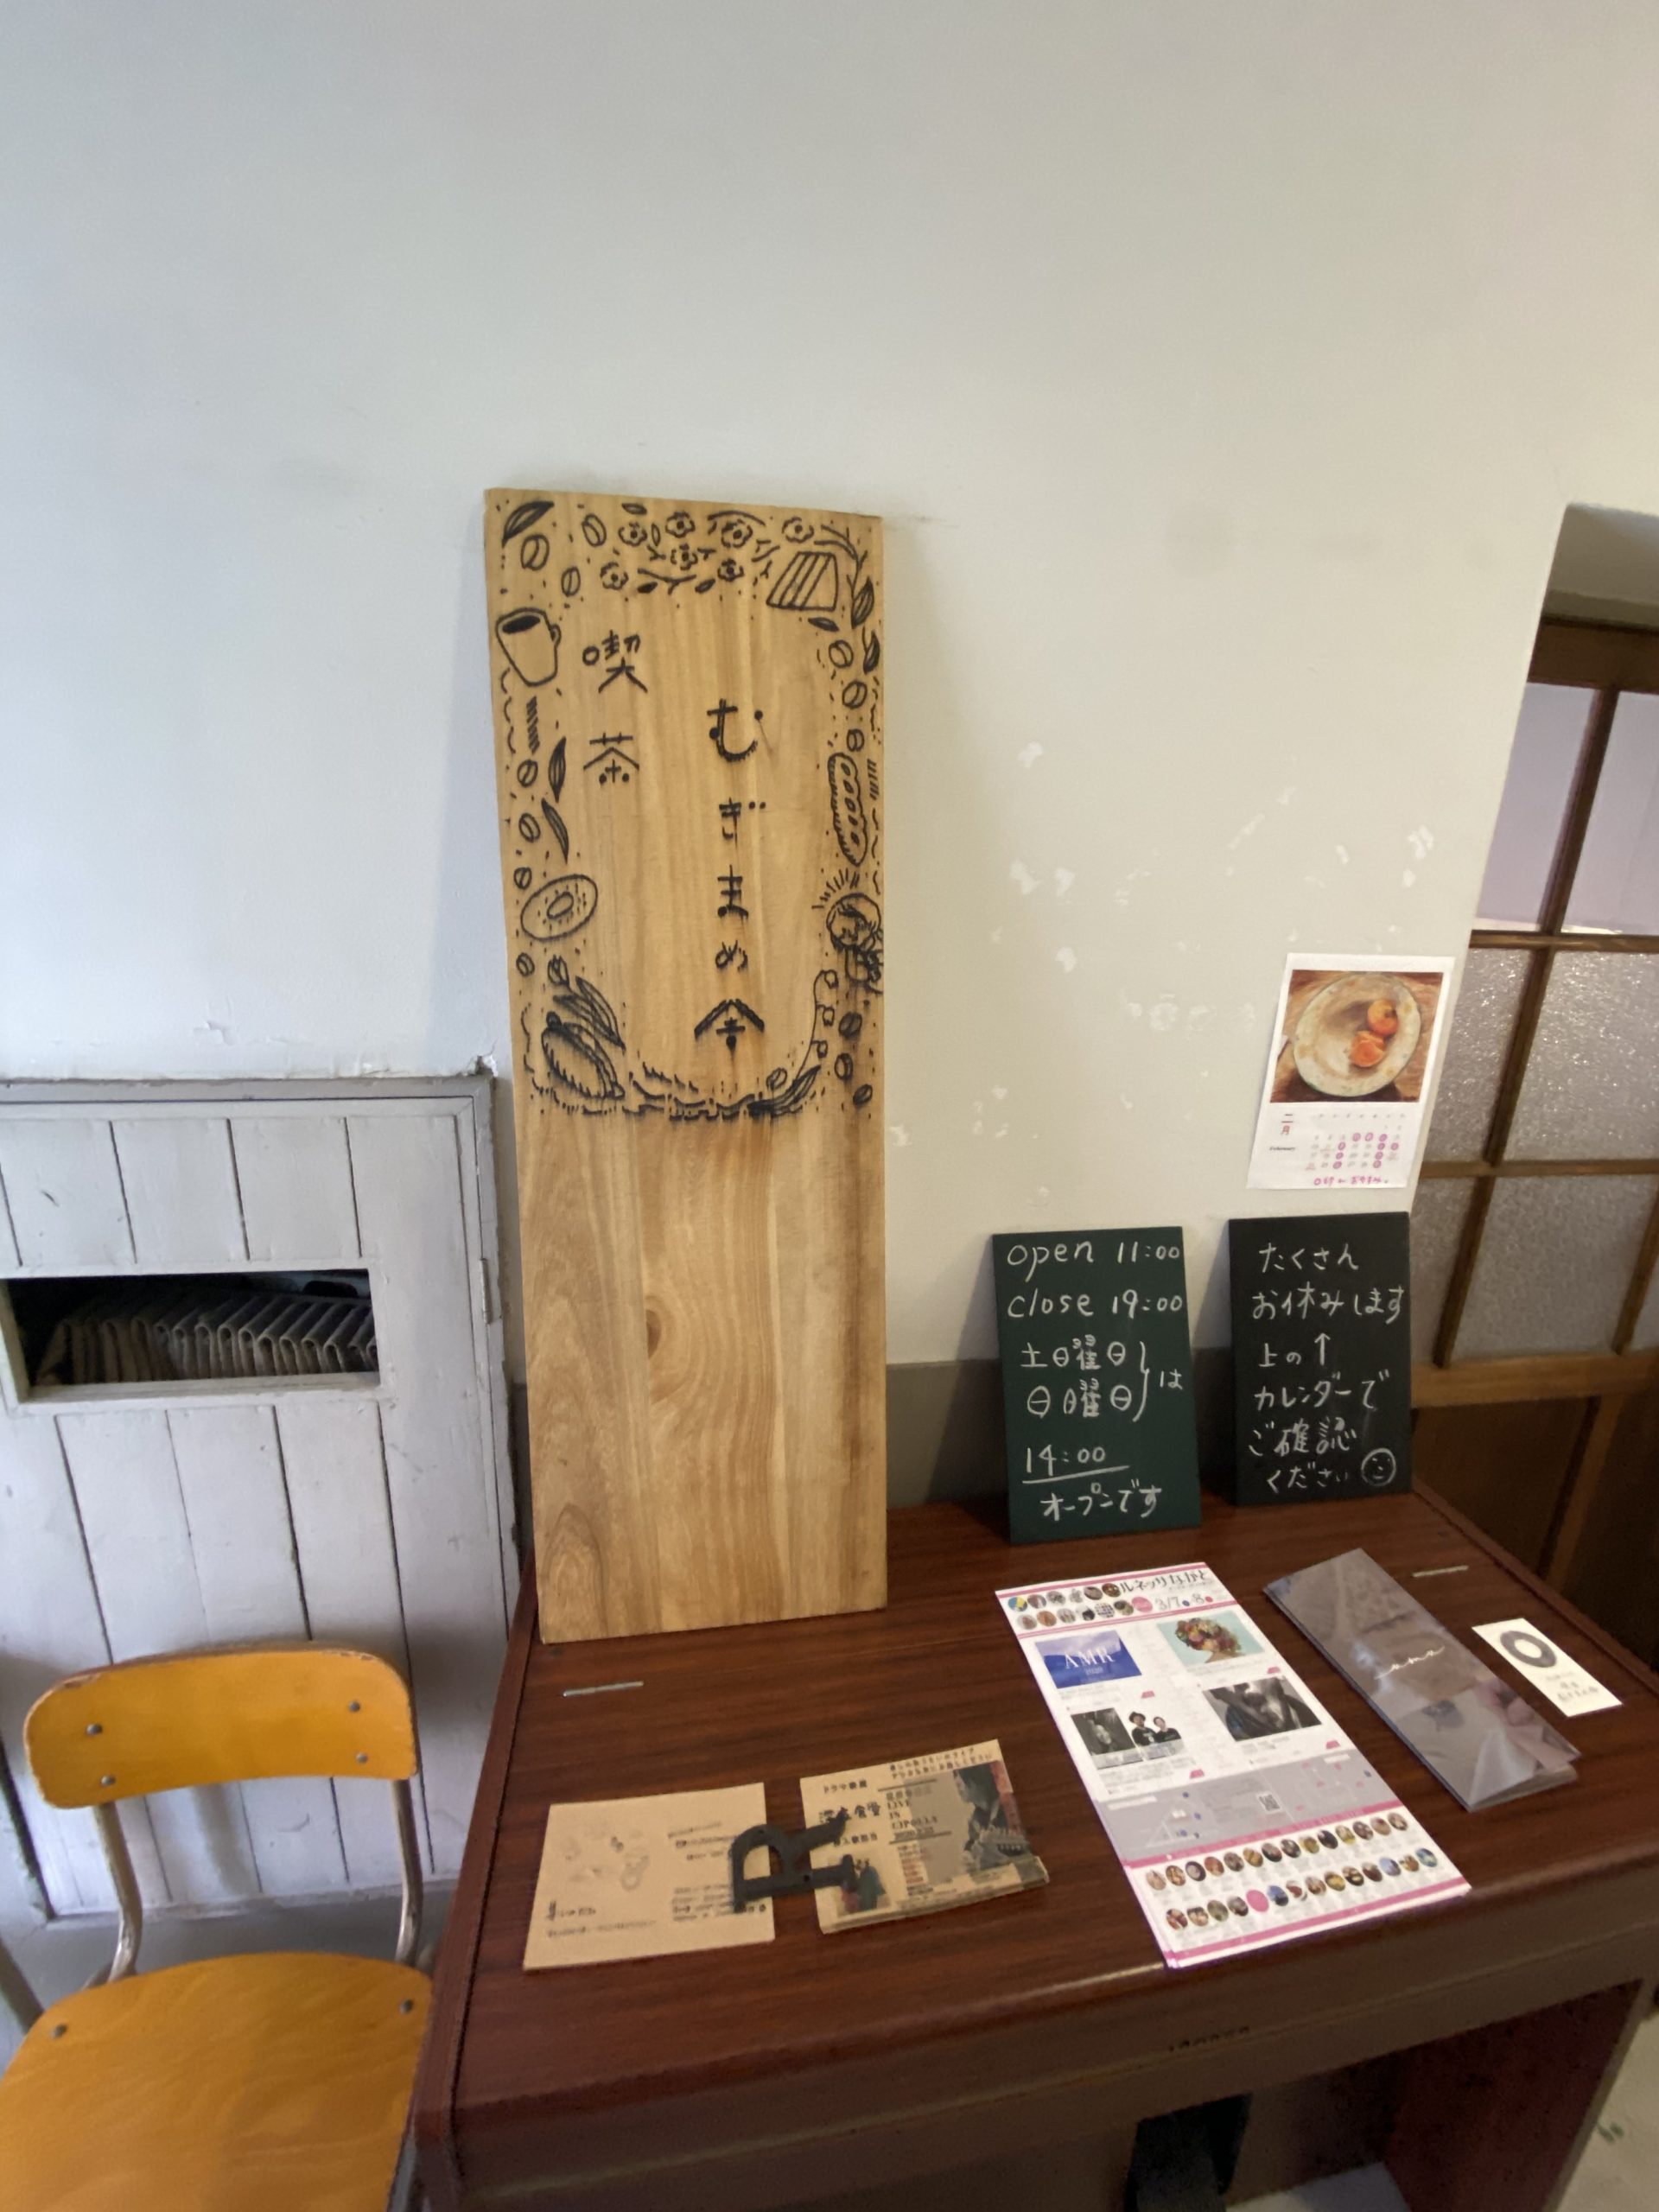 下関市 下関市立図書館 喫茶店 カフェ むぎまめ舎 ジャンヌマミーのブログ